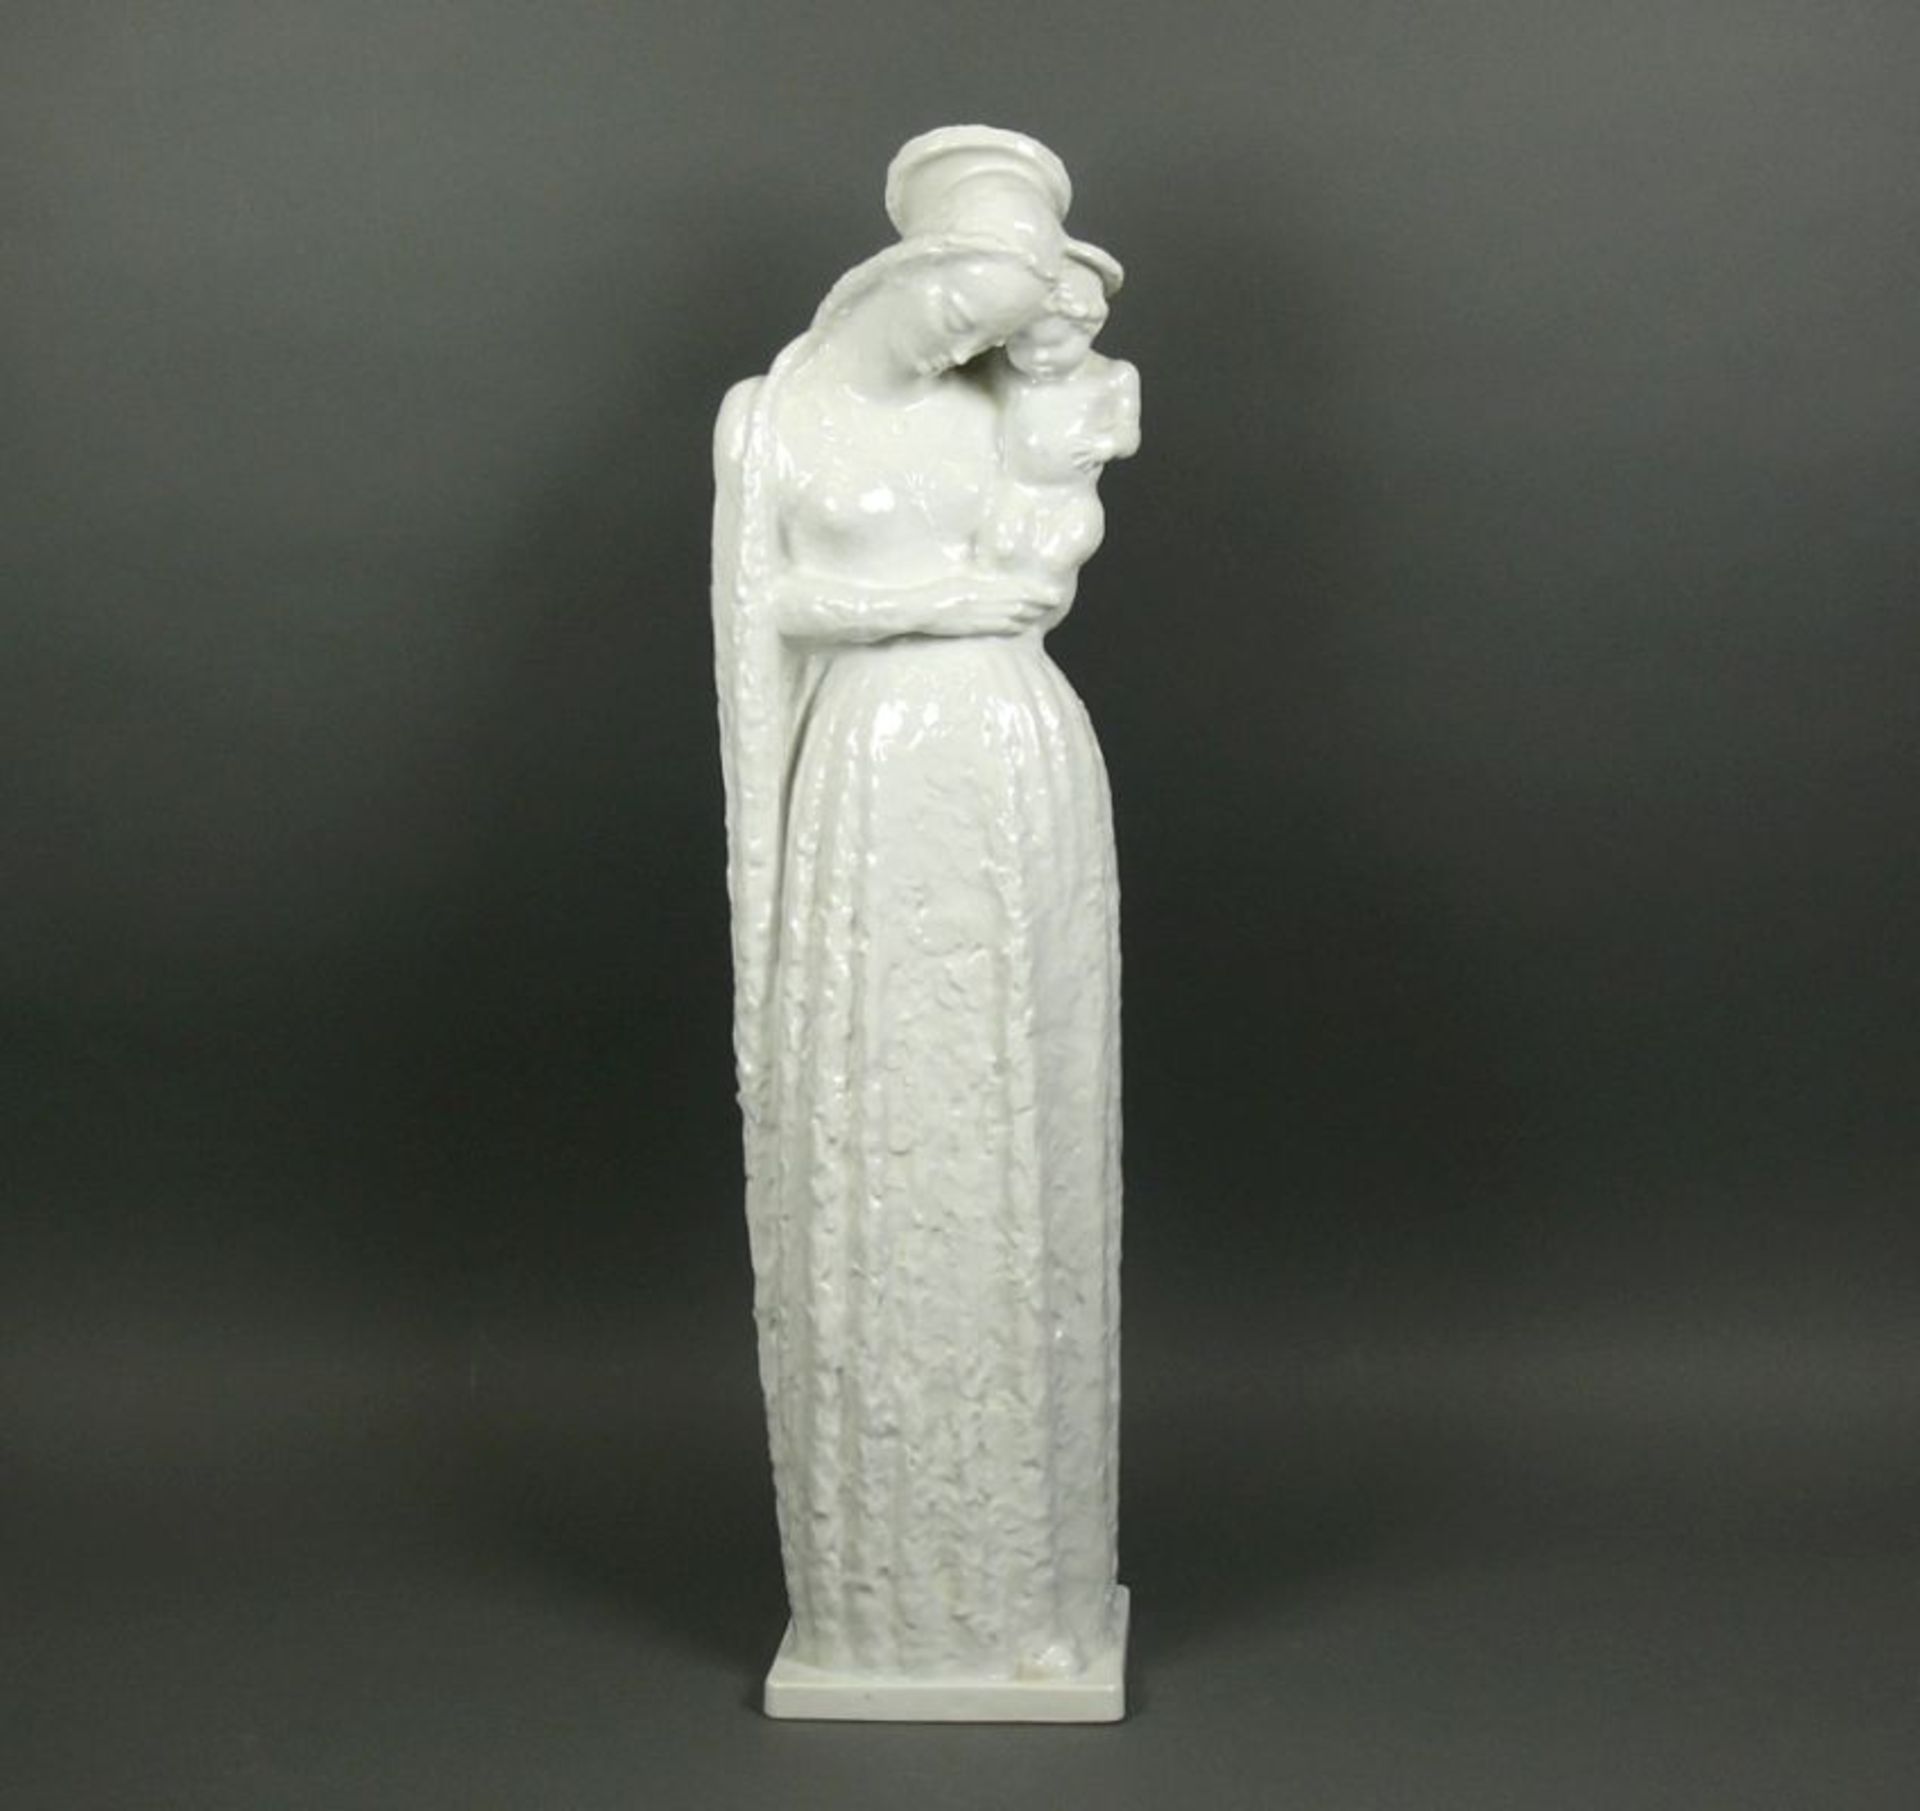 Große Madonna mit Kind (Rosenthal)Entwurf: Daniel Hauenstein 1956; Ausführung Rosenthal, Modell-